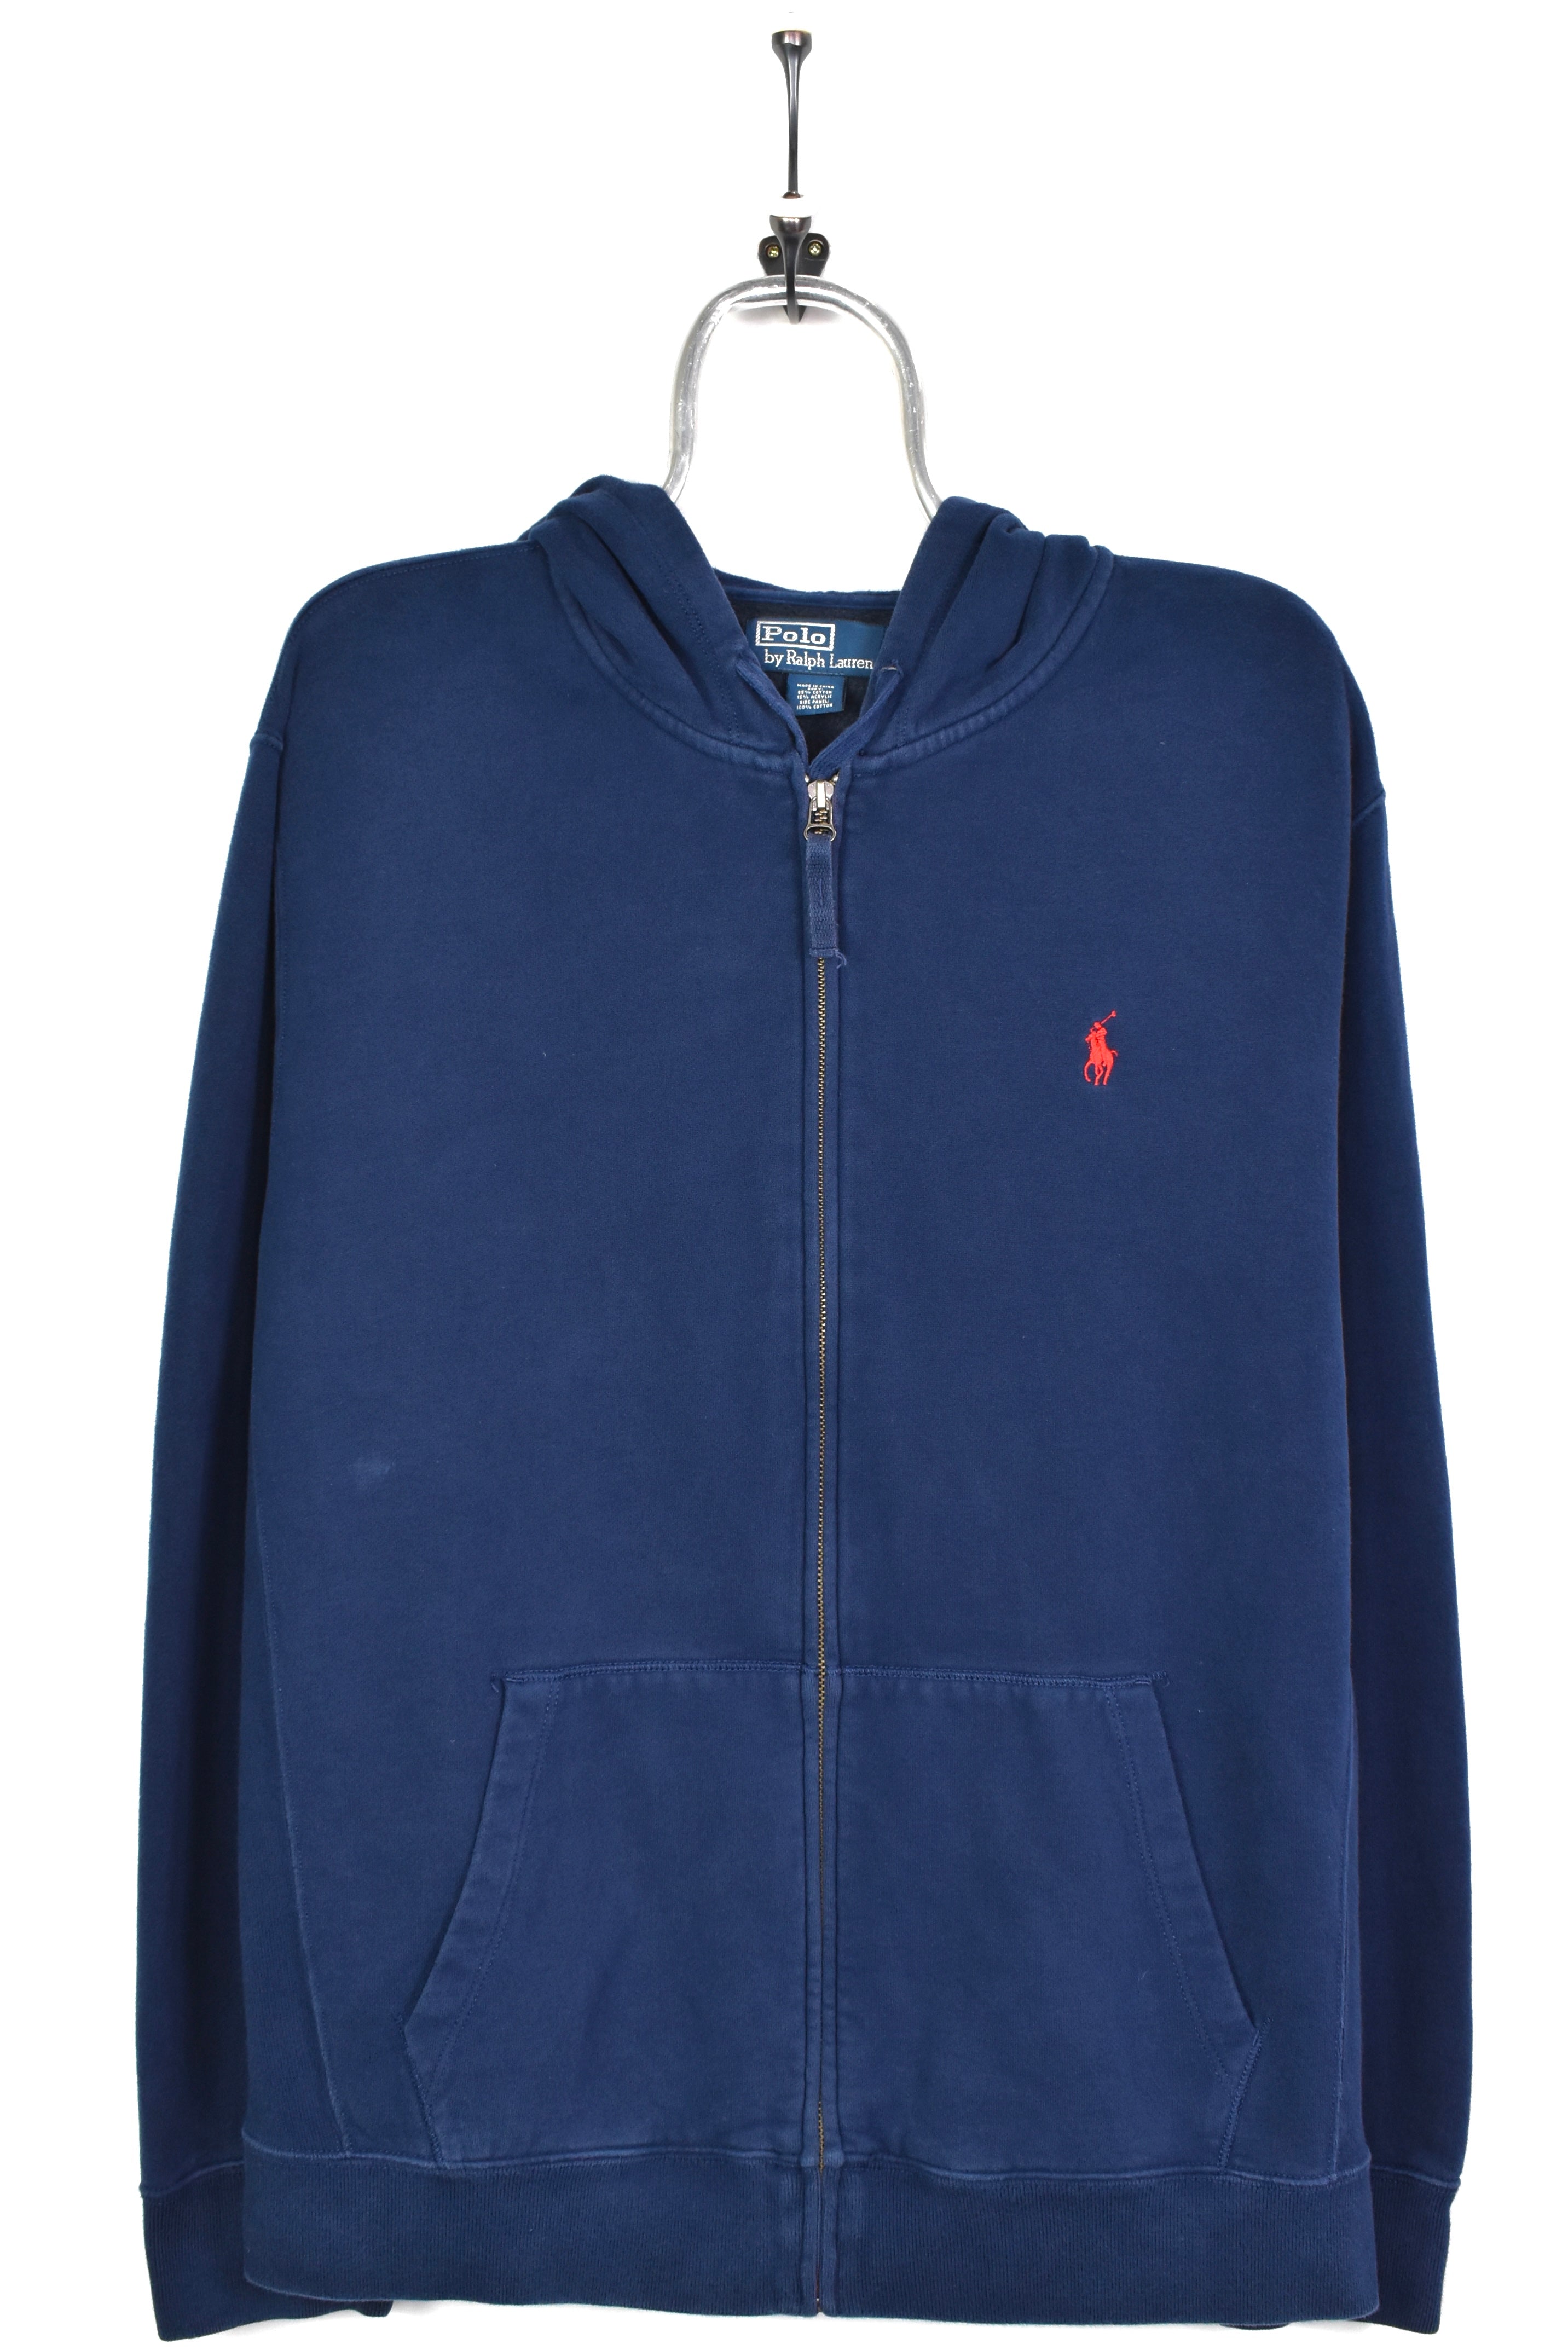 Vintage Ralph Lauren hoodie, full zip embroidered sweatshirt - large, navy blue RALPH LAUREN